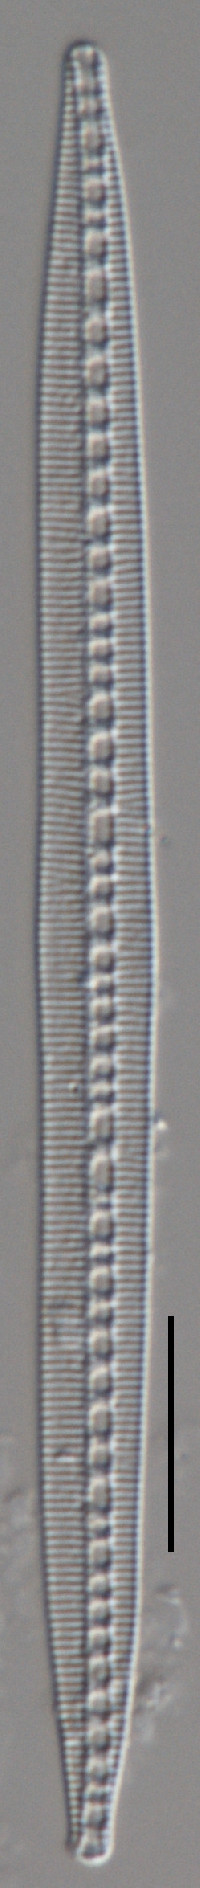 Image of Bacillaria paradoxa